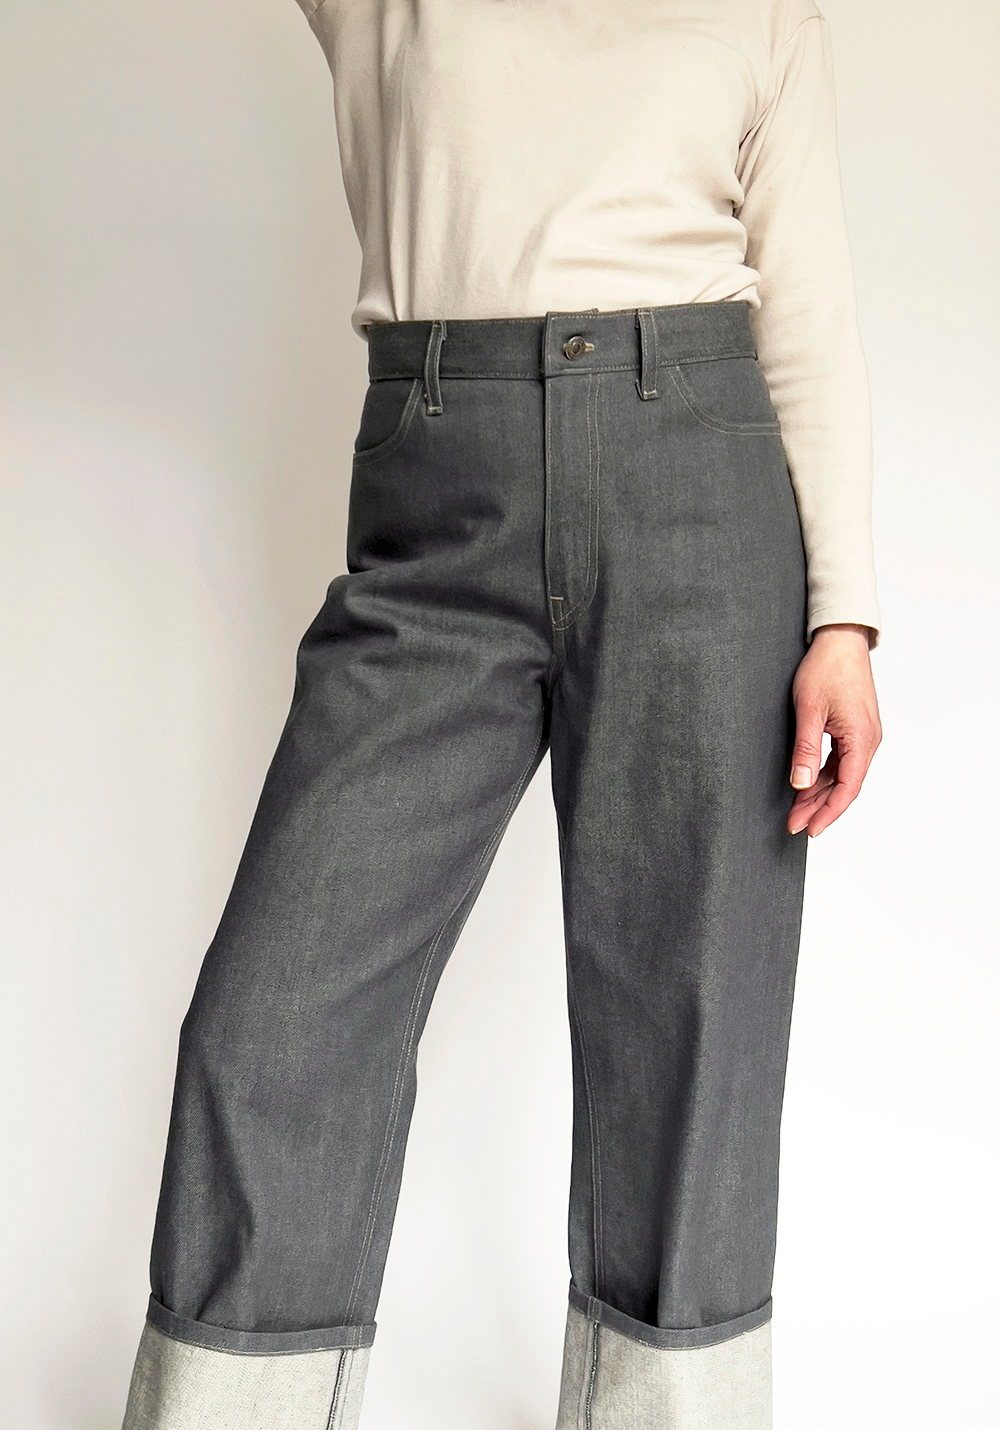 Merchant & Mills Heroine jeans made in grey Japanese selvedge denim ...